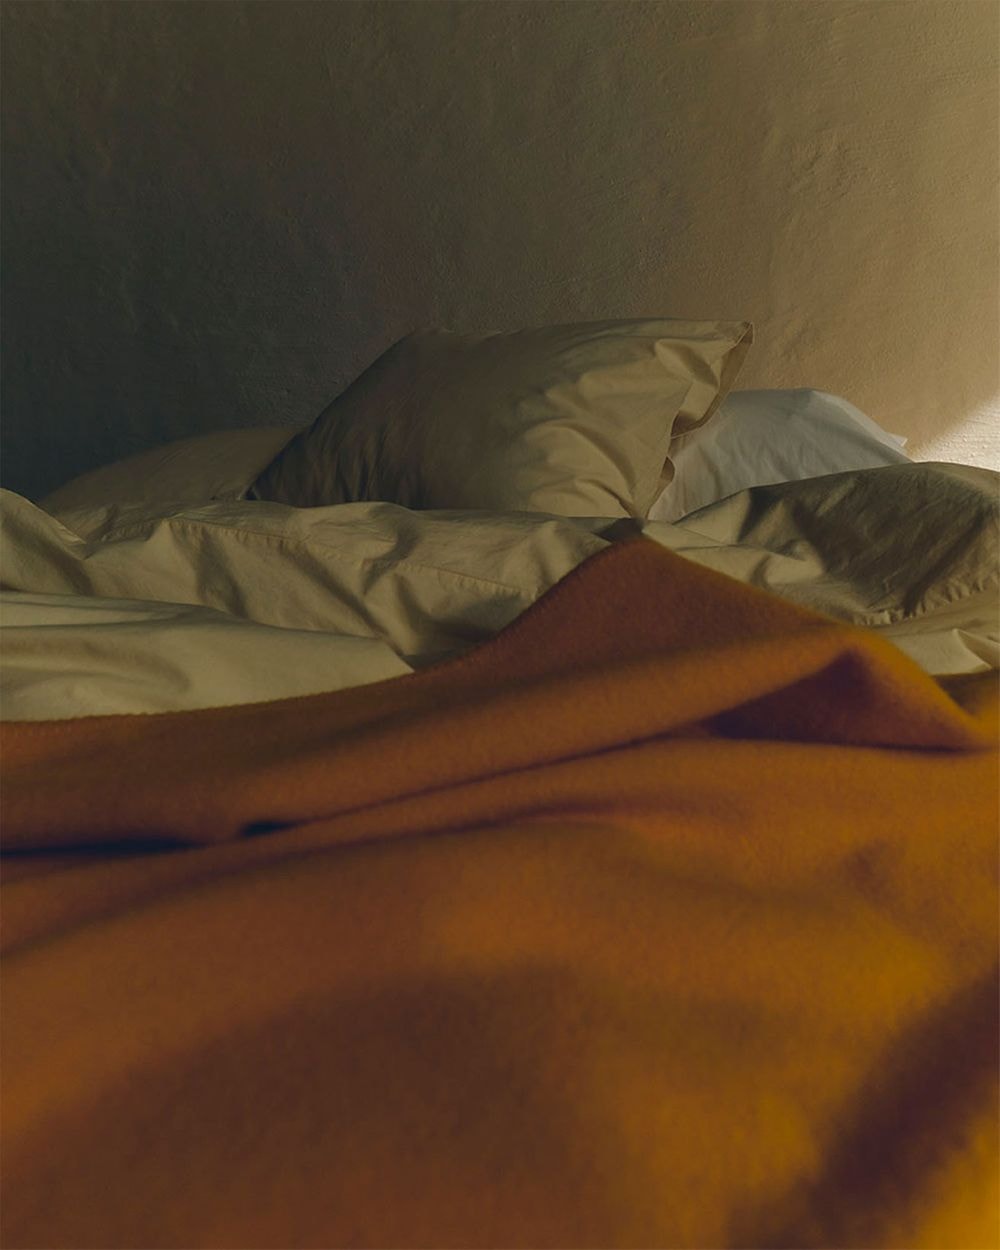 コペンハーゲン発のテクラ ファブリックスが2021年秋コレクションを発表 tekla fabrics fall blankets bedding sleepwear pajamas prism of light collection release date